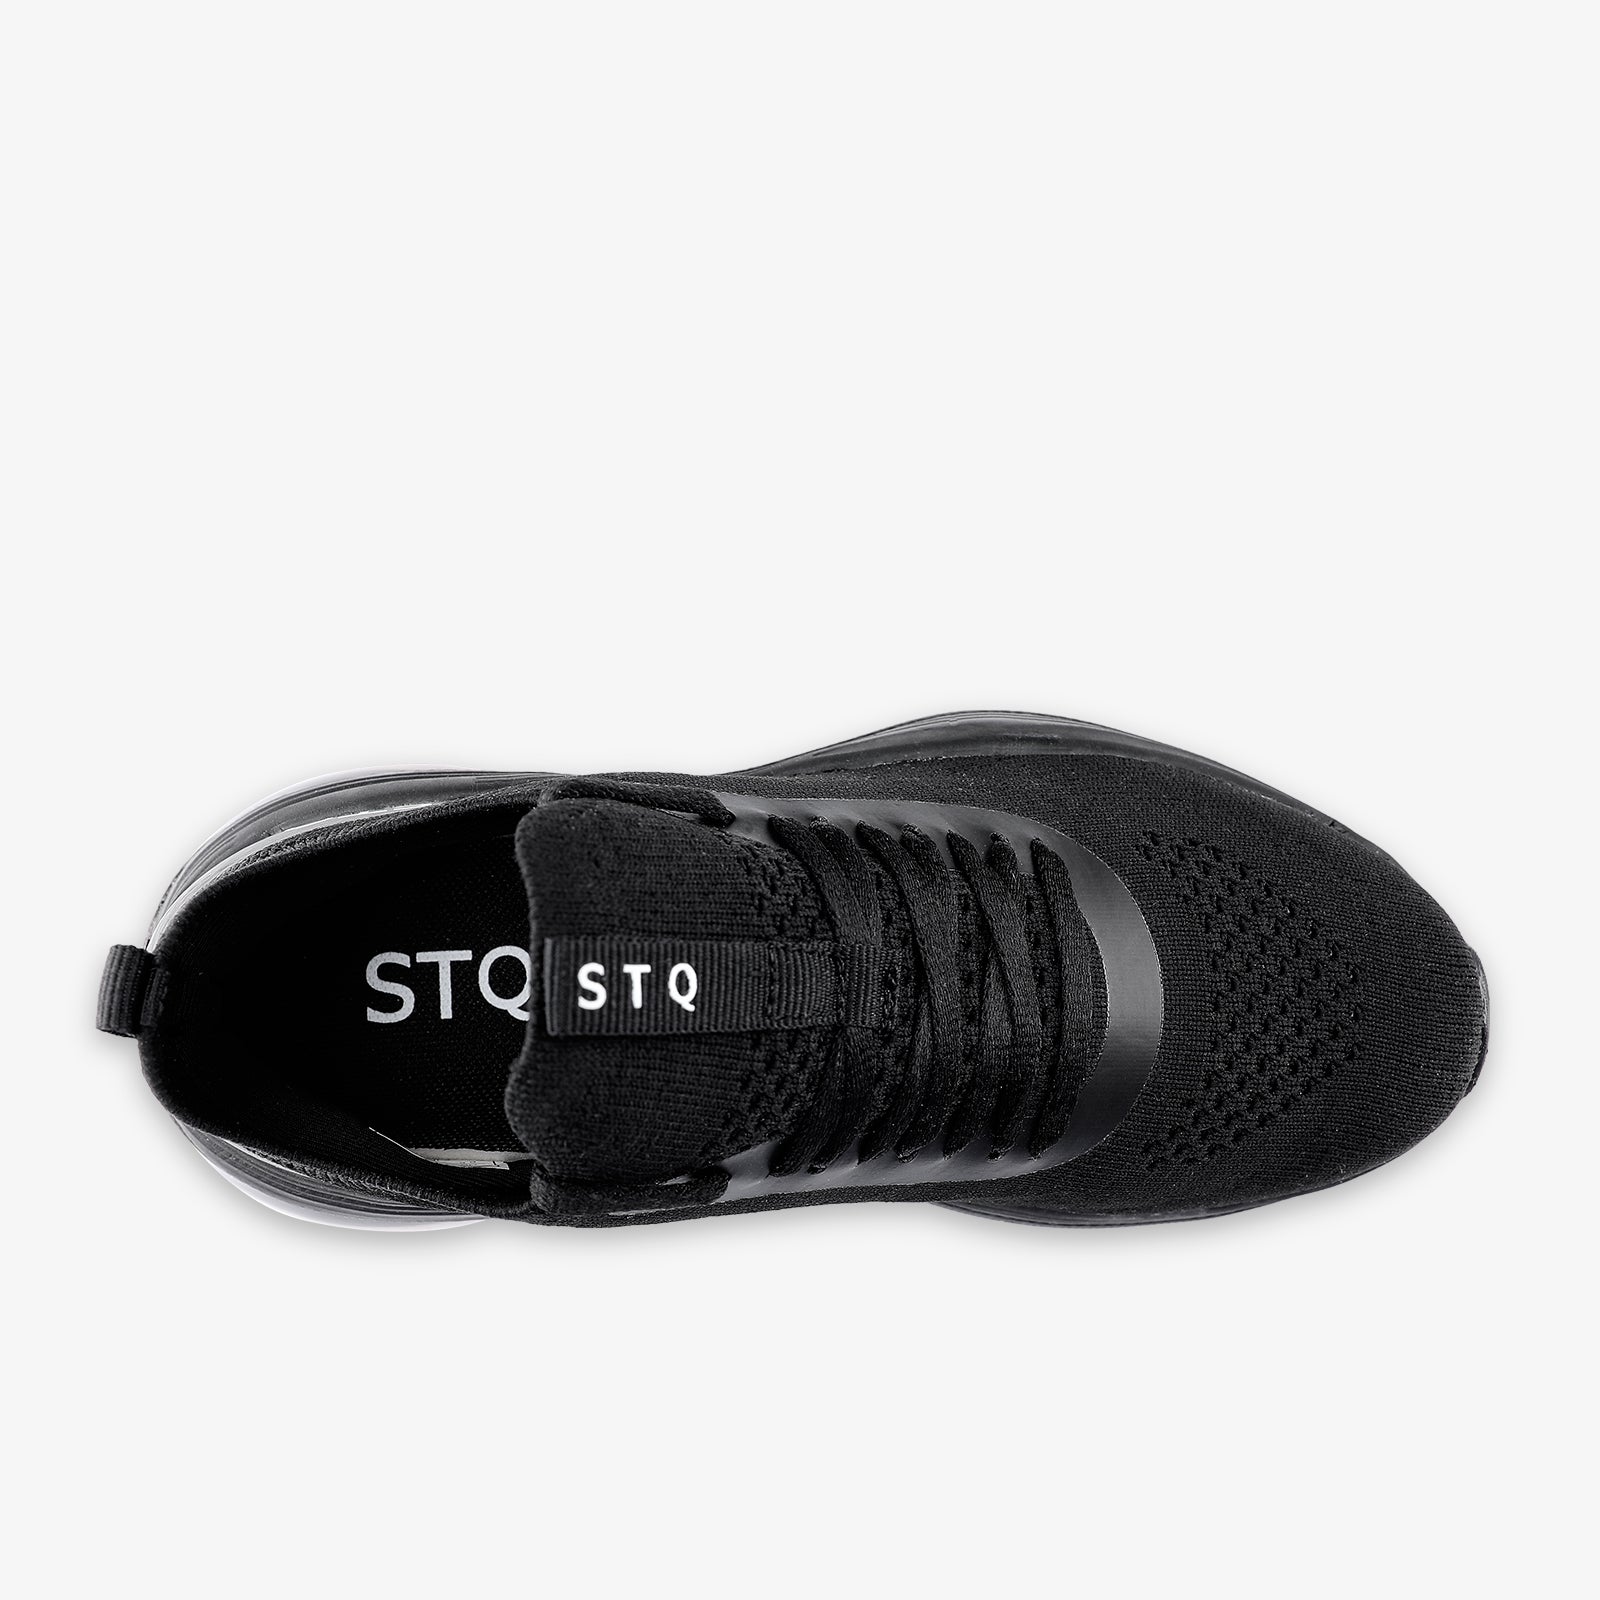 stq-fashion-sneakers-air-cushion-running-shoes-view